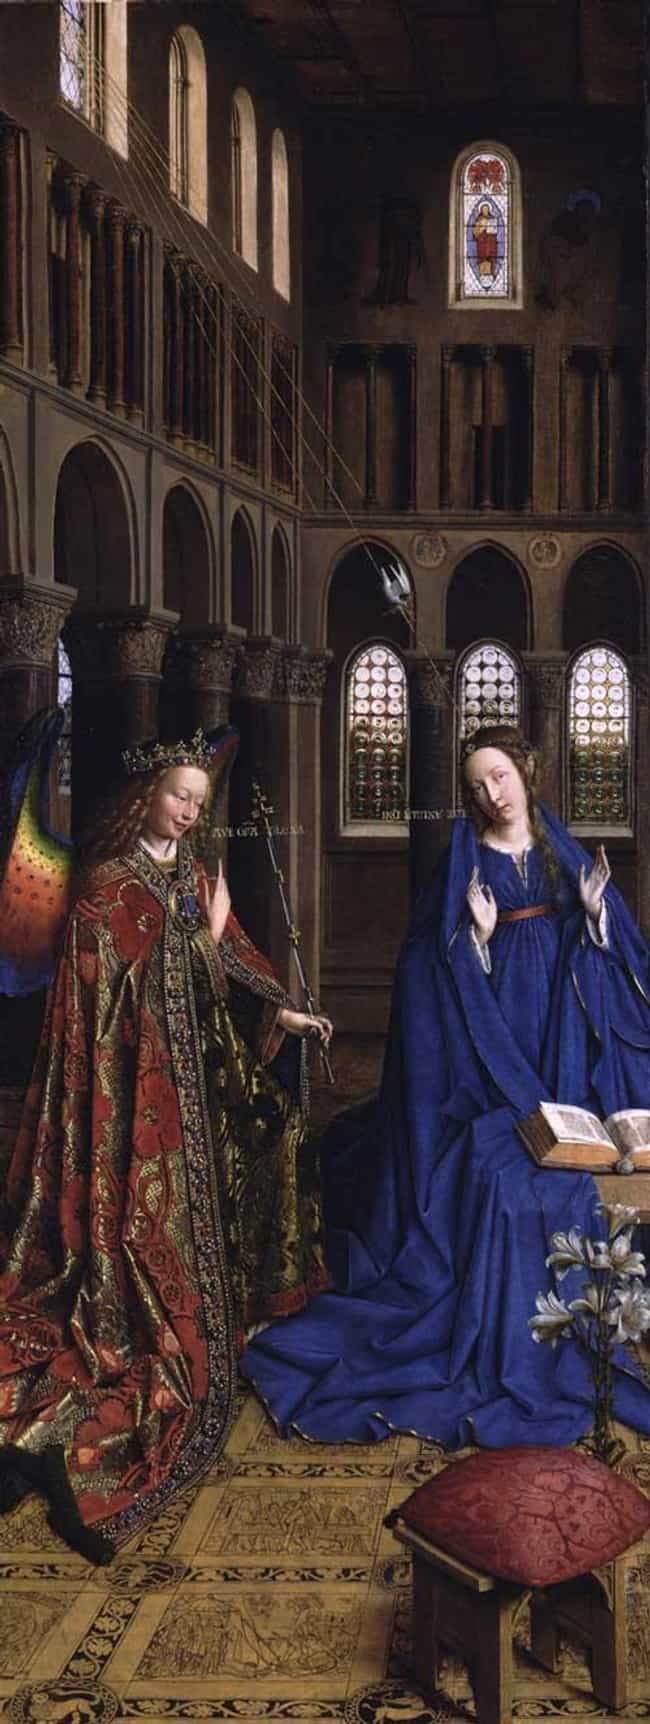 Artwork by Jan Van Eyck List | Jan Van Eyck Paintings & Sculptures